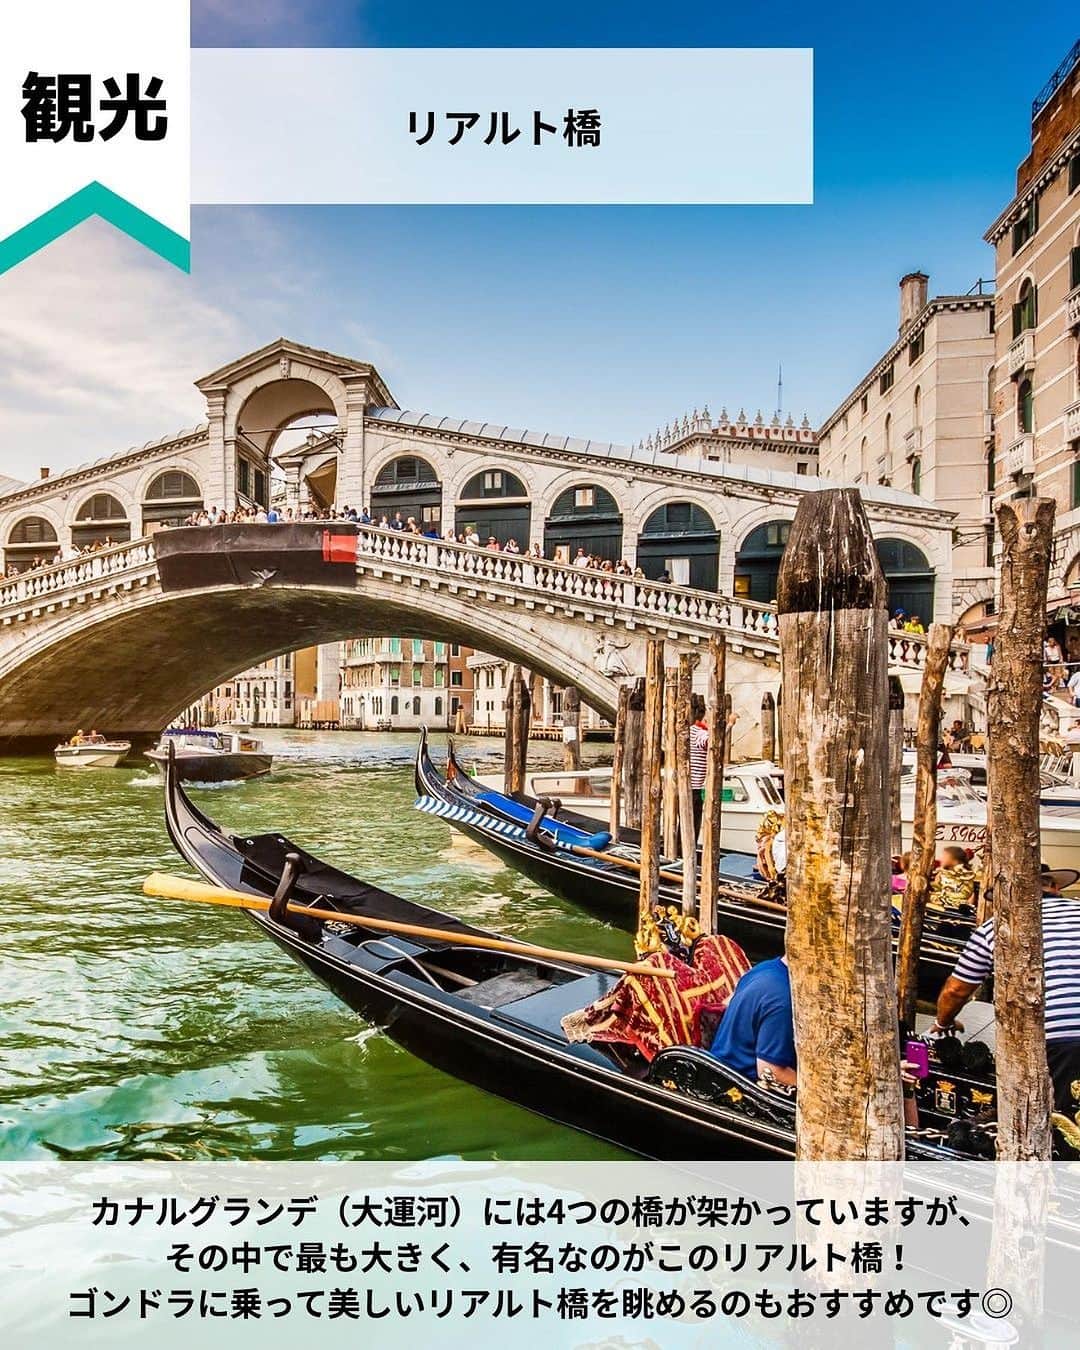 旅工房公式さんのインスタグラム写真 - (旅工房公式Instagram)「＼ロマンチックな水の都を満喫するスポット！／  #イタリア #ベネチア   こんにちは！☺  今回はヨーロッパの中でも人気なイタリアからベネチアをご紹介します！  1カ所だけでもいいですが、ローマやフィレンツェとの国内周遊ツアーで訪れるのもおすすめです✨   次の海外旅行の参考になりますように＼(^o^)／ 💚   ━━━━━━━━━━━━━━━  お写真ありがとうございました📸  📍リアルト橋  カナルグランデ（大運河）には4つの橋が架かっていますが、  その中で最も大きく、有名なのがこのリアルト橋！  ゴンドラに乗って美しいリアルト橋を眺めるのもおすすめです◎   📍カナルグランデ  ベネチアの本島を逆S字に走る、最も大きな運河！  運河沿いには、多種多様な建造物や華やかな宮殿などがあります♪  水上バスに乗って観光するオプショナルツアーがおすすめ♪   📍サン・マルコ寺院  ベネチアで外せない観光スポットの1つ、サン・マルコ寺院！  彫刻で飾られた華やかな外観と5つのドームが特徴♪  内部にある聖マルコが主題の鮮やかなモザイク画が見どころです！   📍ブラーノ島  ベネチア北東部に位置する、カラフルな街並みが魅力の小さな島！  おしゃれな景色はどこを撮ってもフォトジェニック♪  ベネチア本島から水上バスで約40分でアクセスできますよ！   📍ドゥカーレ宮殿  ベネチアの観光スポットで外せない、世界遺産のドゥカーレ宮殿。  内部はとても広く、天井や壁を埋め尽くす壮大な絵画は迫力満点！  近くにある大鐘楼もあわせて観光するのがおすすめです！  📍Cafe Florian（@caffeflorian1720） @kanapi_pooh さん 世界最古のカフェを皆さんご存じですか？  それがこの1720年に創業されたカフェフローリアン！ゴージャスな店内が非日常館満載♪  コーヒー以外にもカクテルや軽食まで色々なメニューがあります◎   📍Gelatoteca Suso（@gelatoteca_suso ） @maimai__trip さん  ベネチアには多数のジェラート屋さんがありますが、その中でも大人気のスポットがこのお店！  お店のロゴが描かれたクッキーがかわいい♪  日本にはあまりないフレーバーも多く何を頼むか迷ってしまいます◎   この記事を読んで、ぜひ参考にしてみて下さい＼(^o^)／💛   ━━━━━━━━━━━━━━━   #旅工房 #イタリア旅行 #ベネチア旅行 #イタリア周遊旅行 #イタリアグルメ #ベネチアグルメ #イタリアカフェ #ベネチアカフェ #カナルグランデ #サンマルコ寺院 #ブラーノ島 #ドゥカーレ宮殿 #カフェフローリアン #caferlorian #gelatotecasuso  #ジェラート #ヨーロッパ旅行 #リアルト橋 #サンマルコ広場 #イタリア土産 #海外旅行 #旅行好きな人と繋がりたい #海外旅行準備 #旅好き女子 #妄想旅行 #海外旅行行きたい #海外旅行計画 #旅スタグラム」8月31日 18時25分 - tabikobo